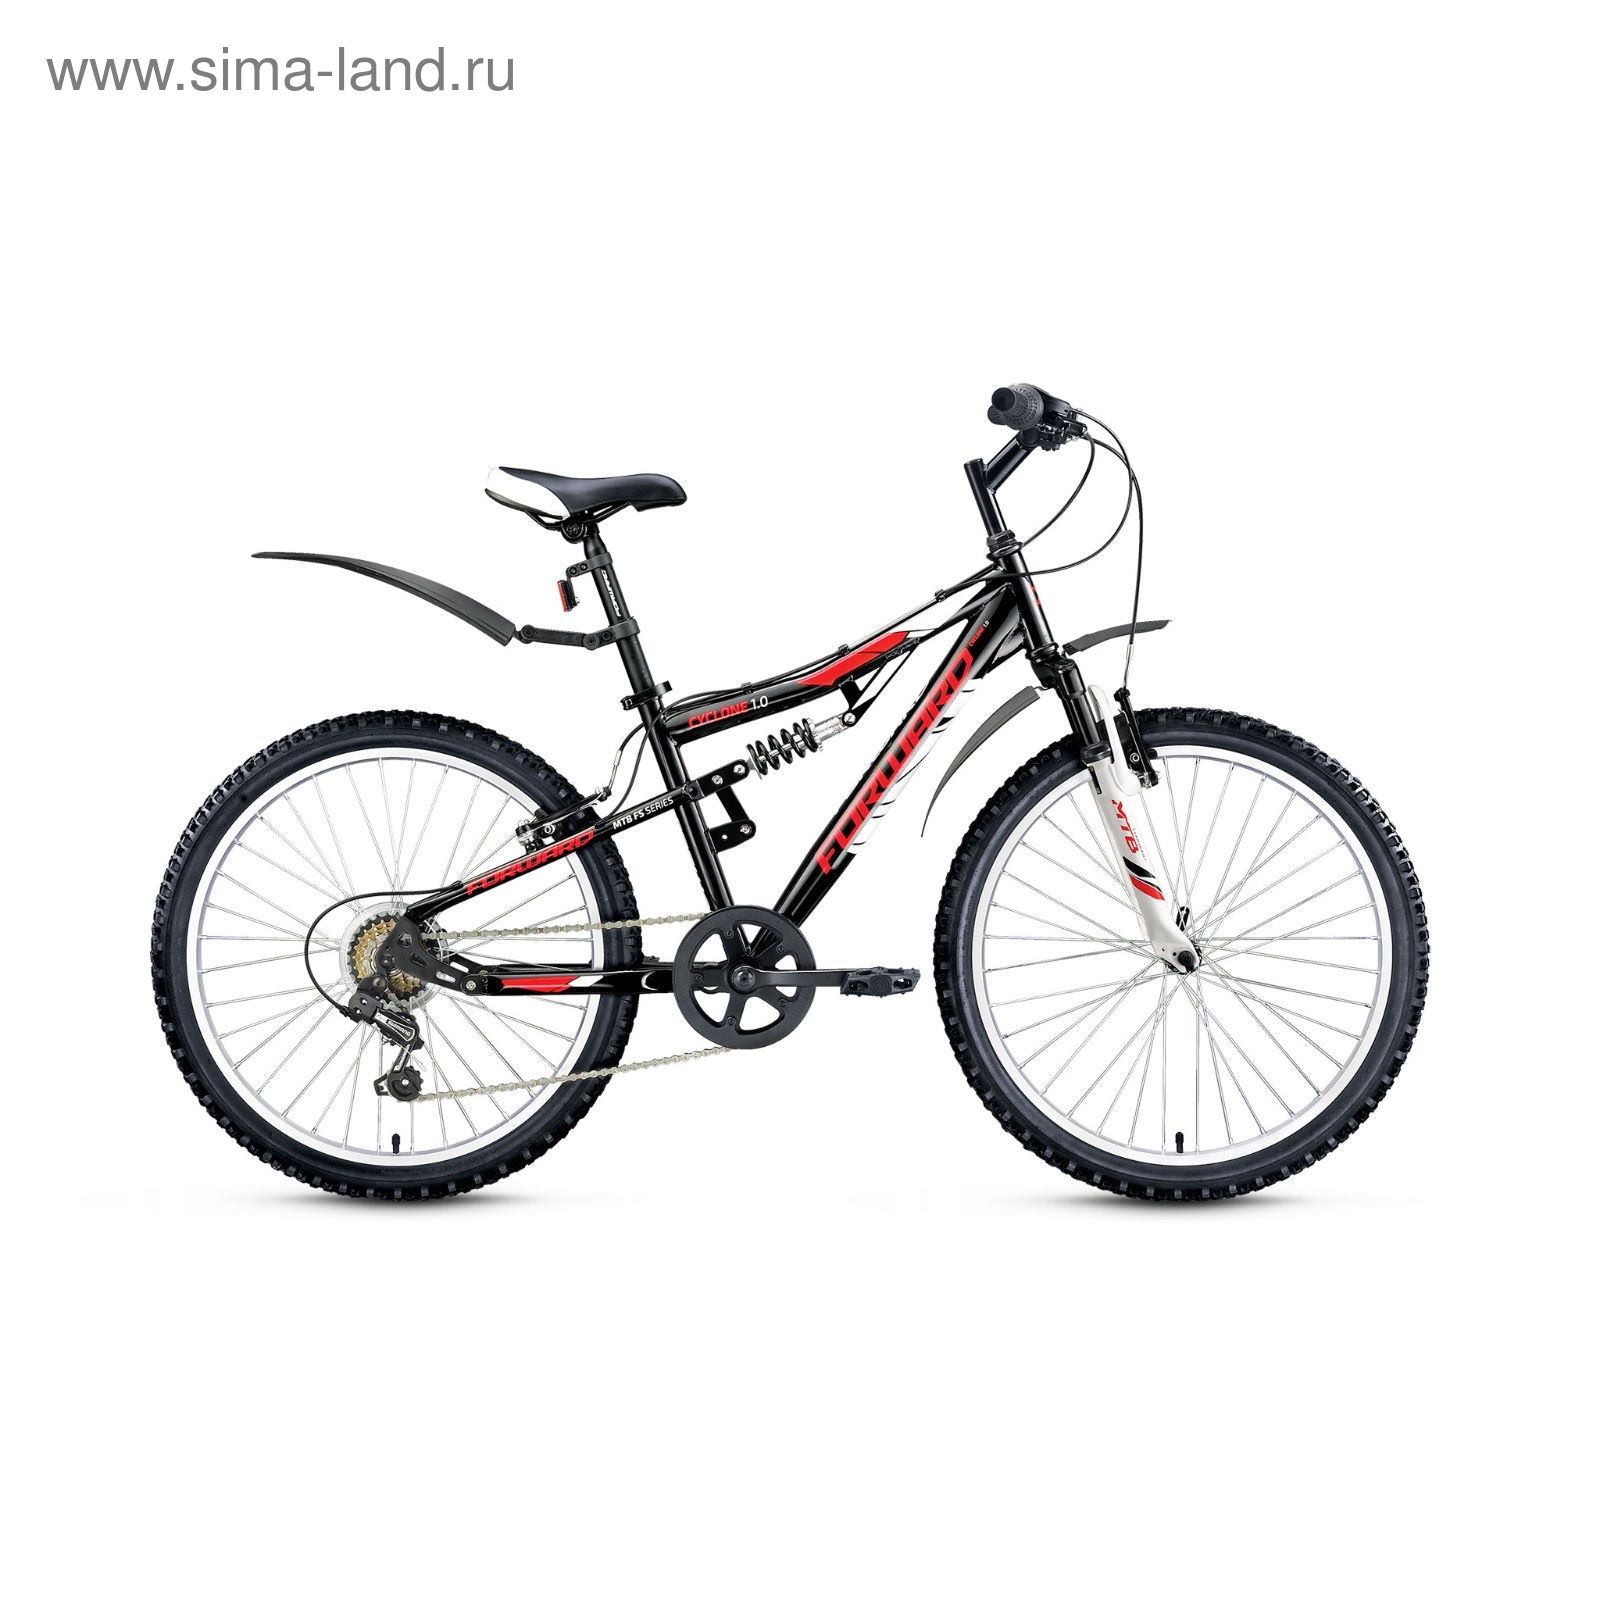 Велосипед 24" Forward Cyclone 1.0, 2017, цвет черный, размер 14,5"